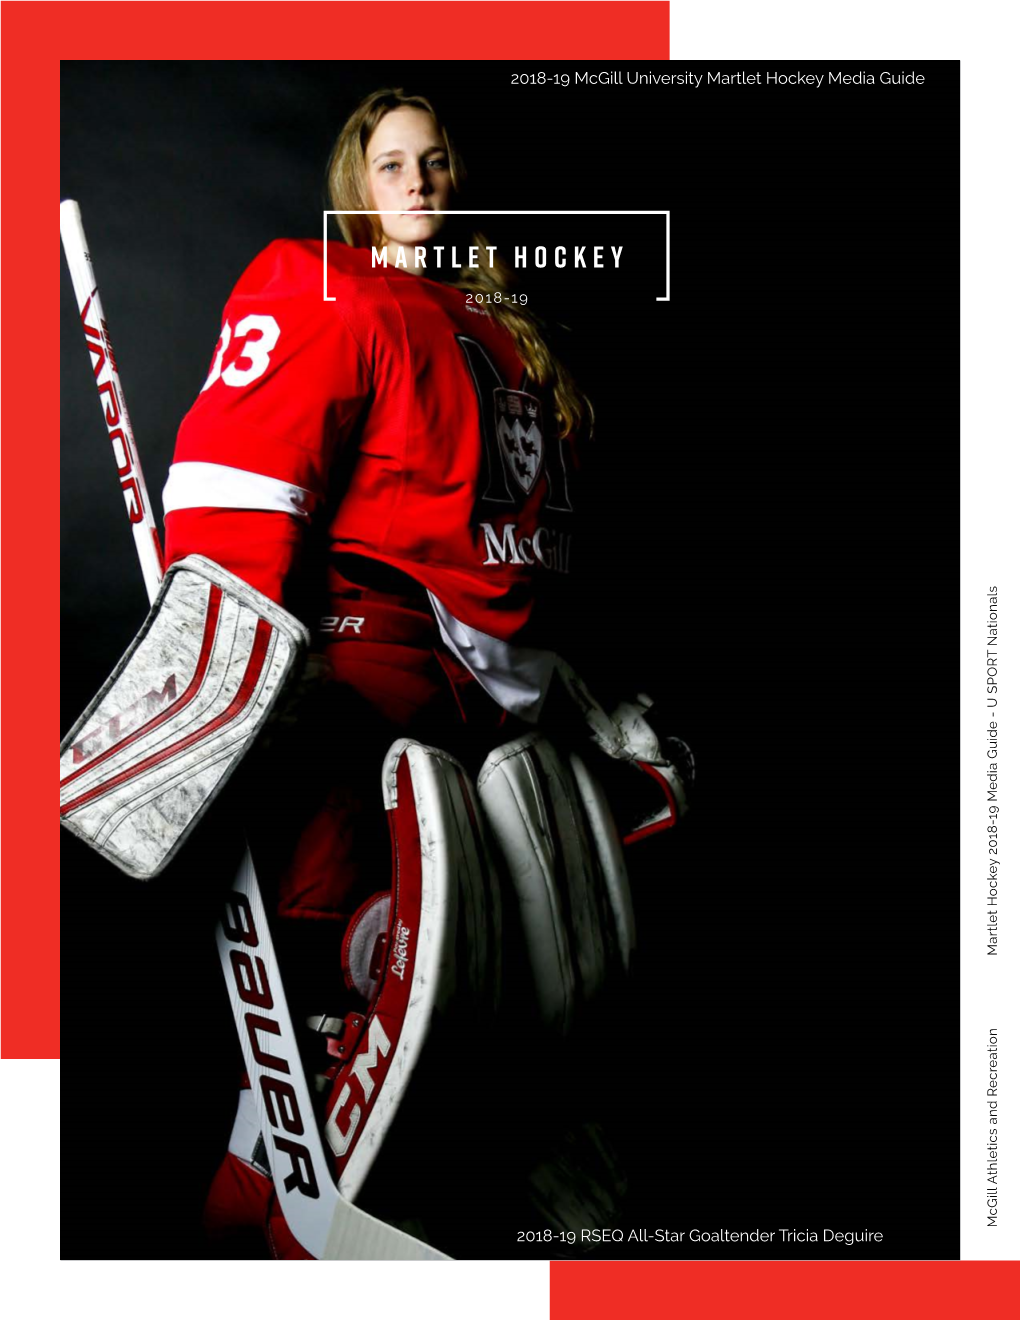 MARTLET HOCKEY 2018-19 2018-19 Mcgill University Martlet Hockey Media Guide 2018-19 RSEQ All-Star Goaltender Tricia Deguire